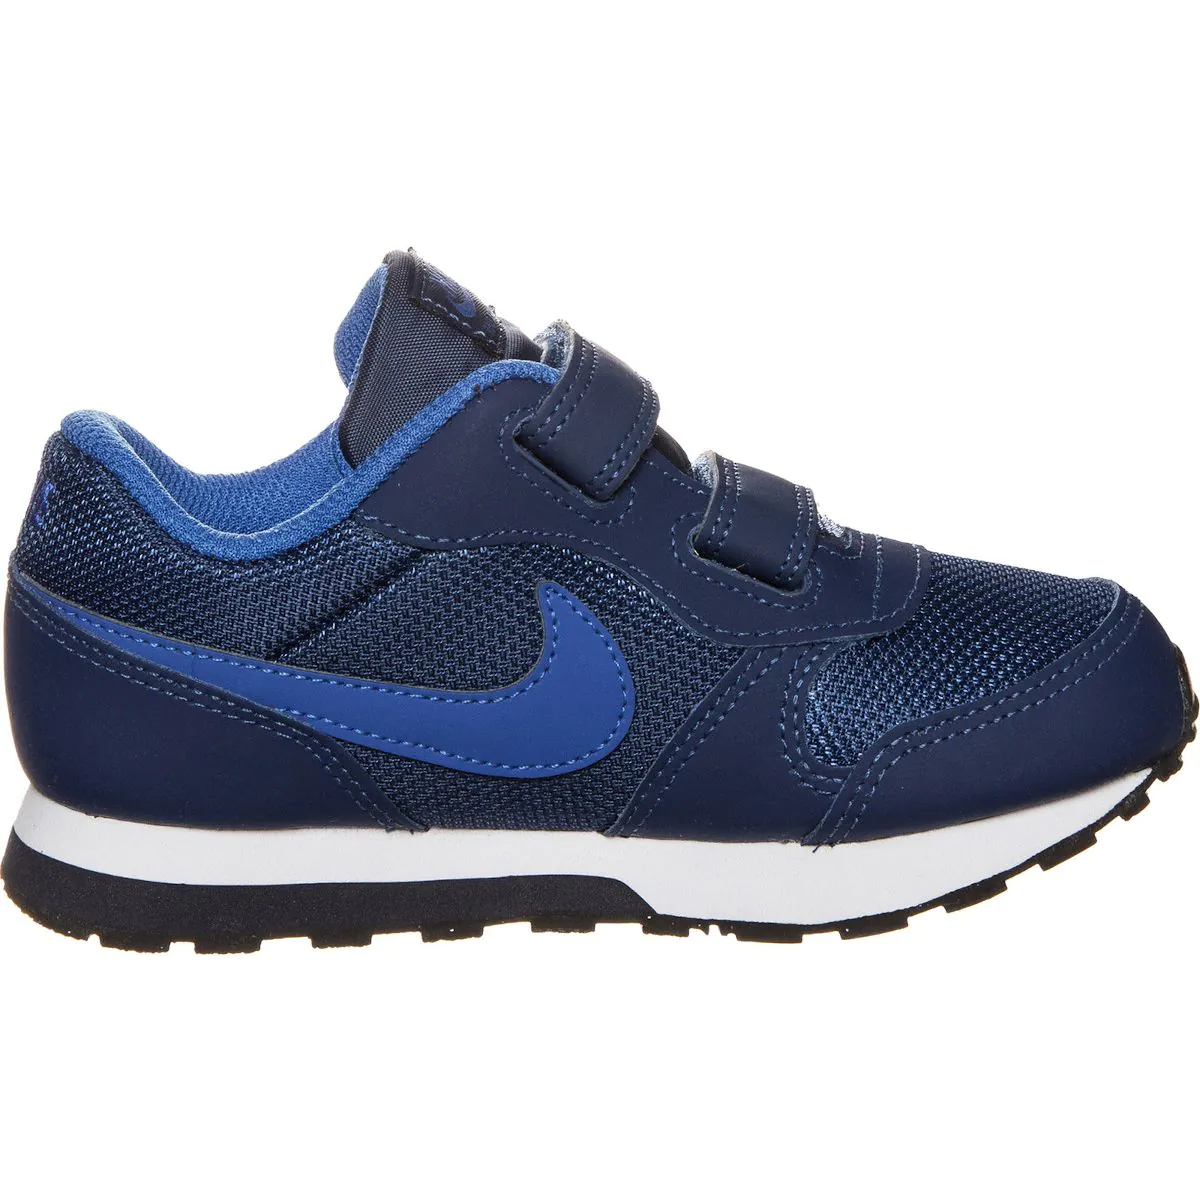 Nike MD Runner 2 (TDV) Boys' Toddler Shoes 806255-405